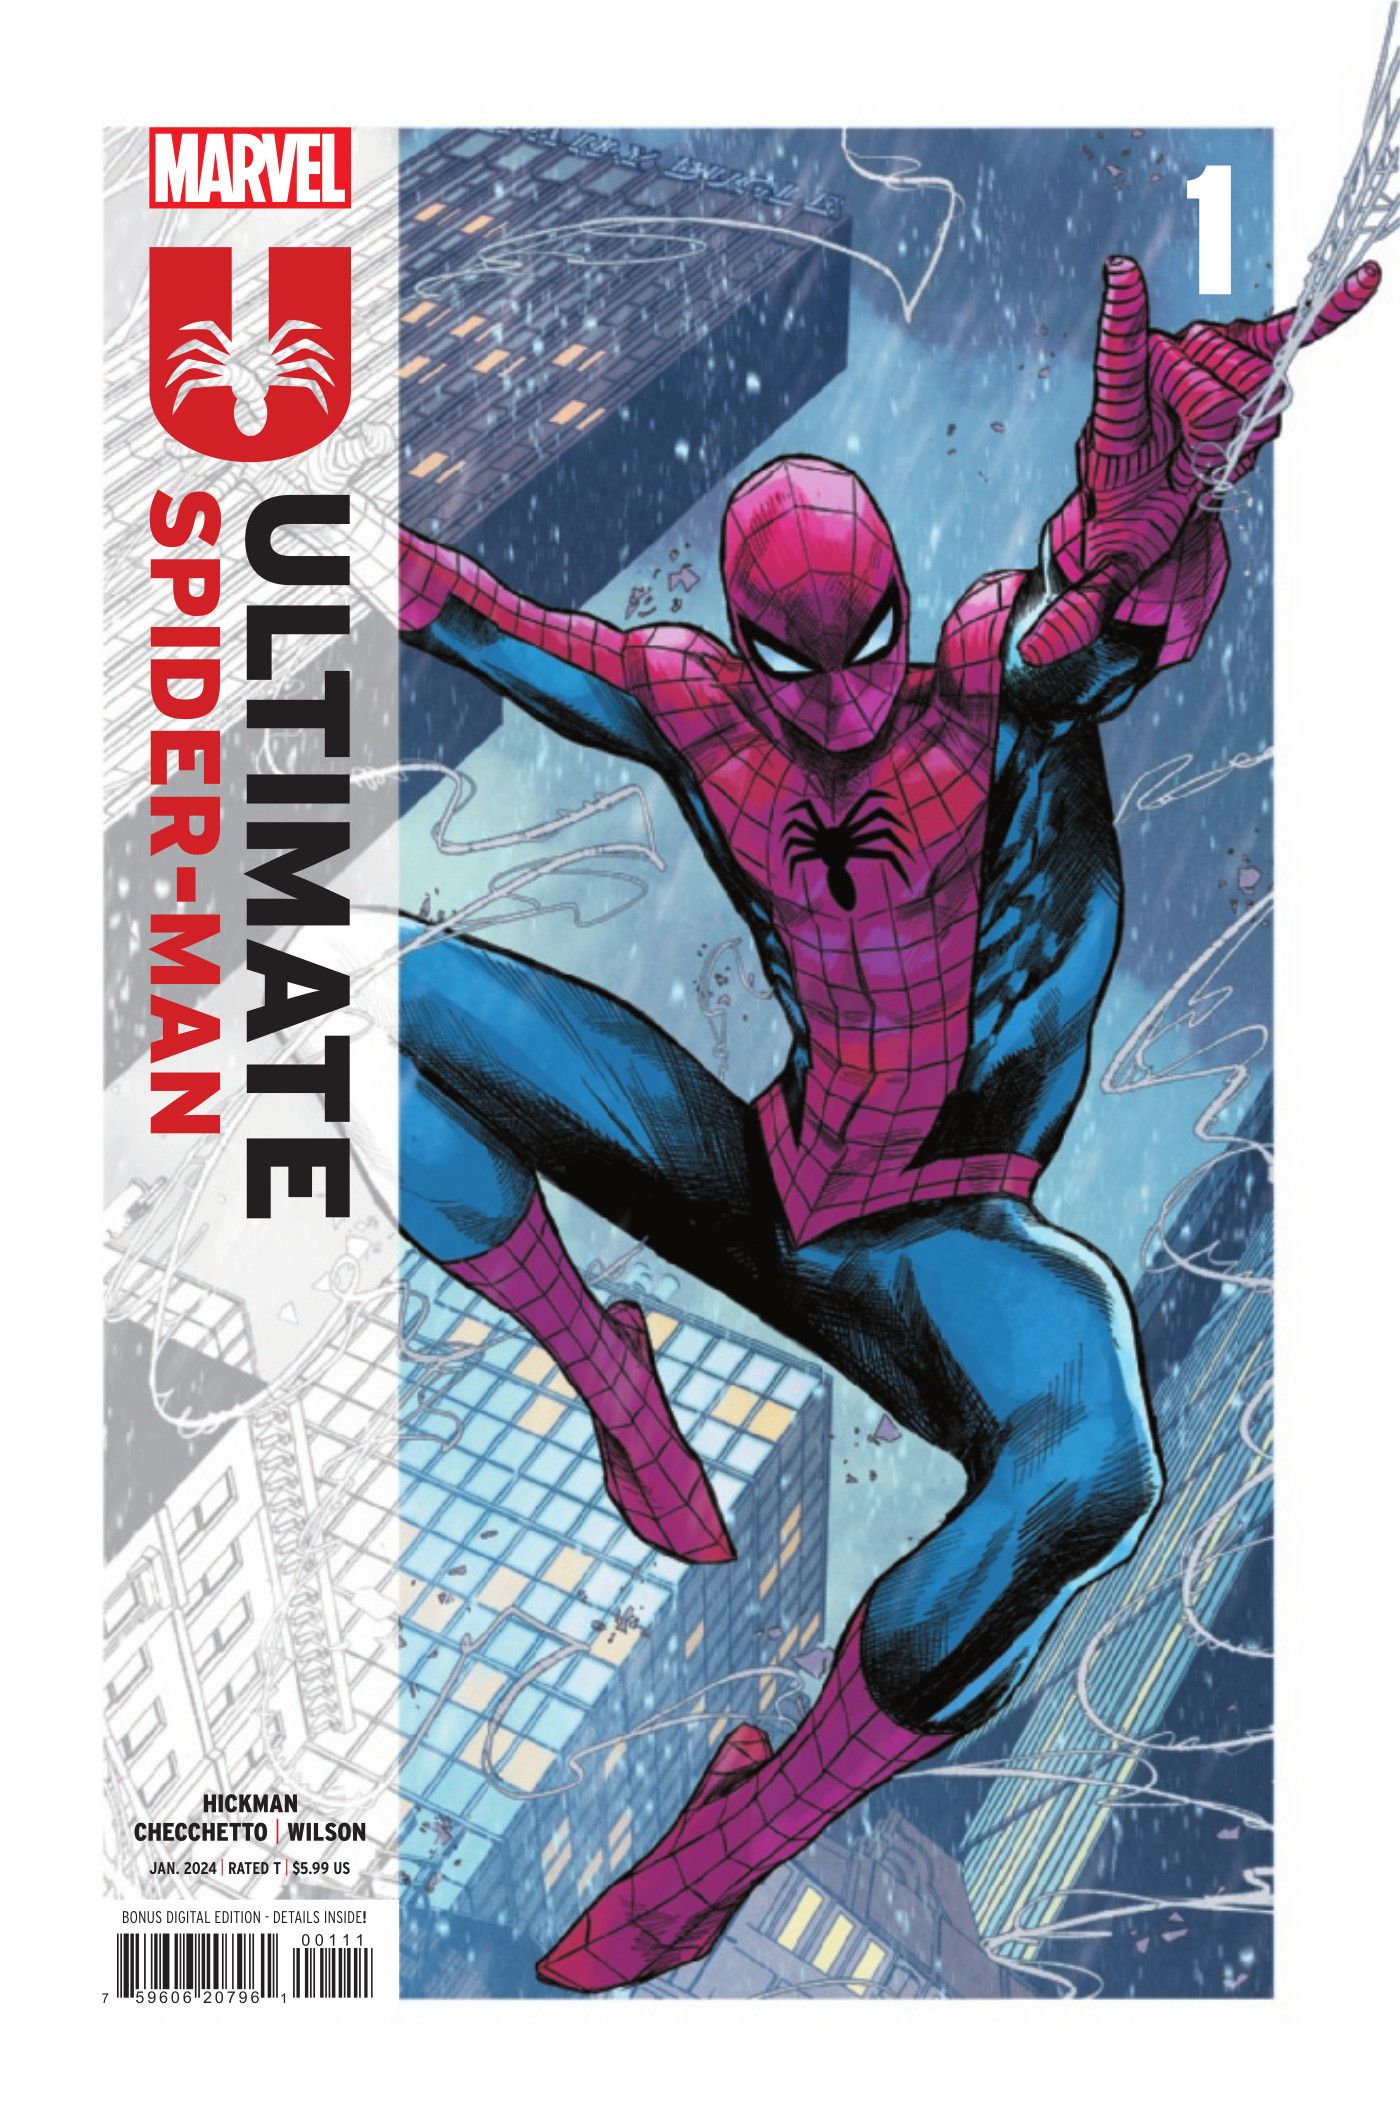 O Homem-Aranha lança sua teia sobre a cidade na capa Ultimate Spider-Man #1 de Marco Checcetto e Matthew Wilson